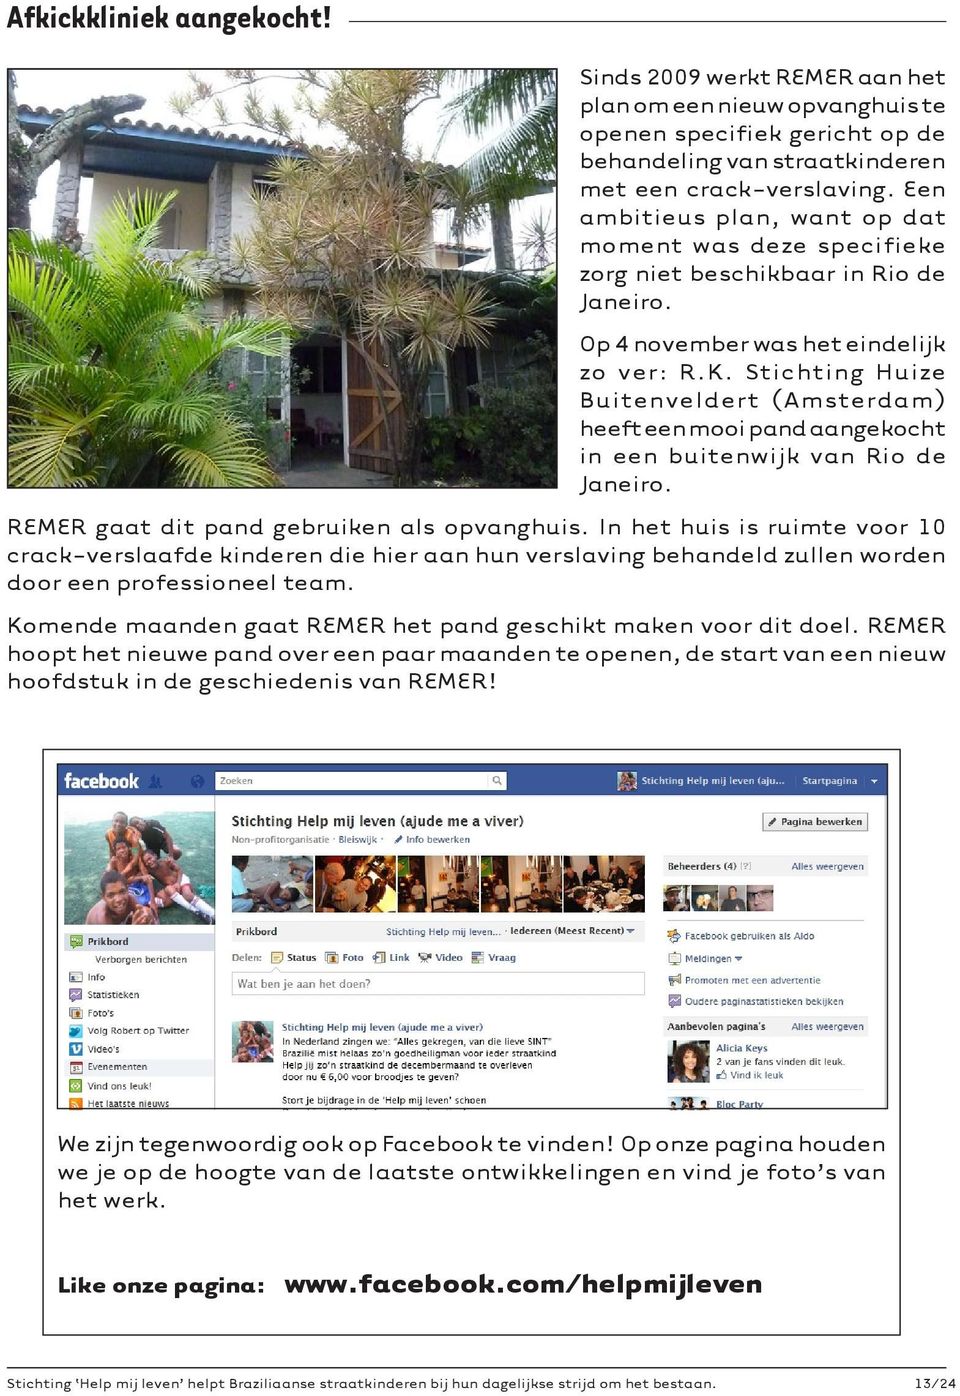 Stichting Huize Buitenveldert (Amsterdam) heeft een mooi pand aangekocht in een buitenwijk van Rio de Janeiro. REMER gaat dit pand gebruiken als opvanghuis.